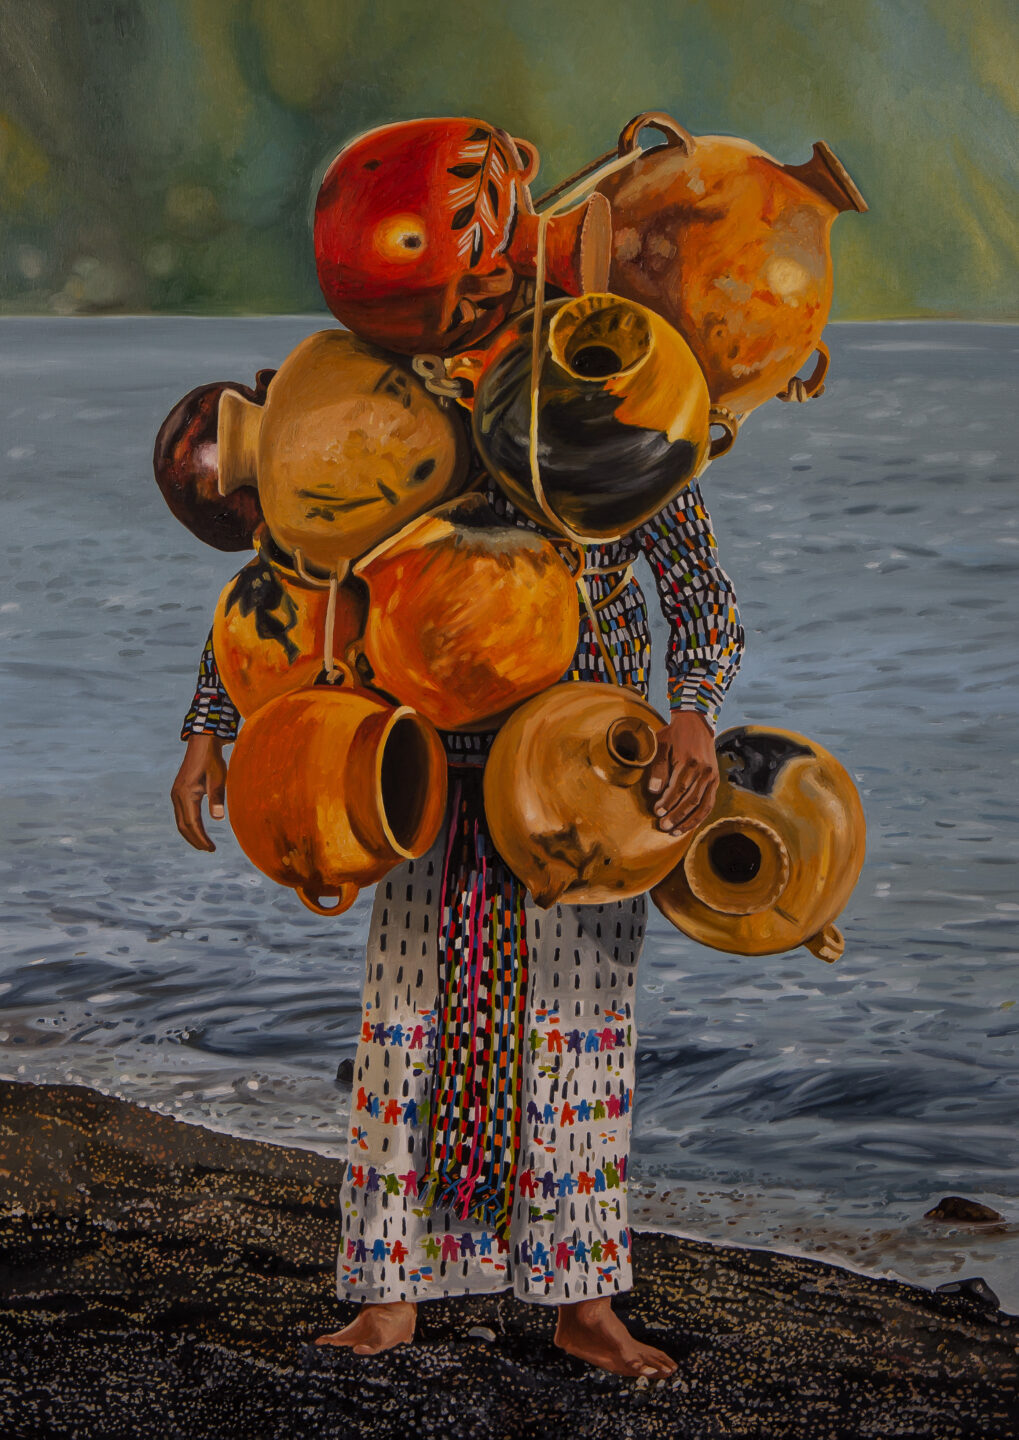 Pintura figurativa de Manuel Chavajay que mostra uma pessoa usando trajes tradicionais da América Central com oito vasos grandes e circulares sendo levados em cima de sua cabeça, cobrindo seu rosto. A pessoa está diante de um lago.